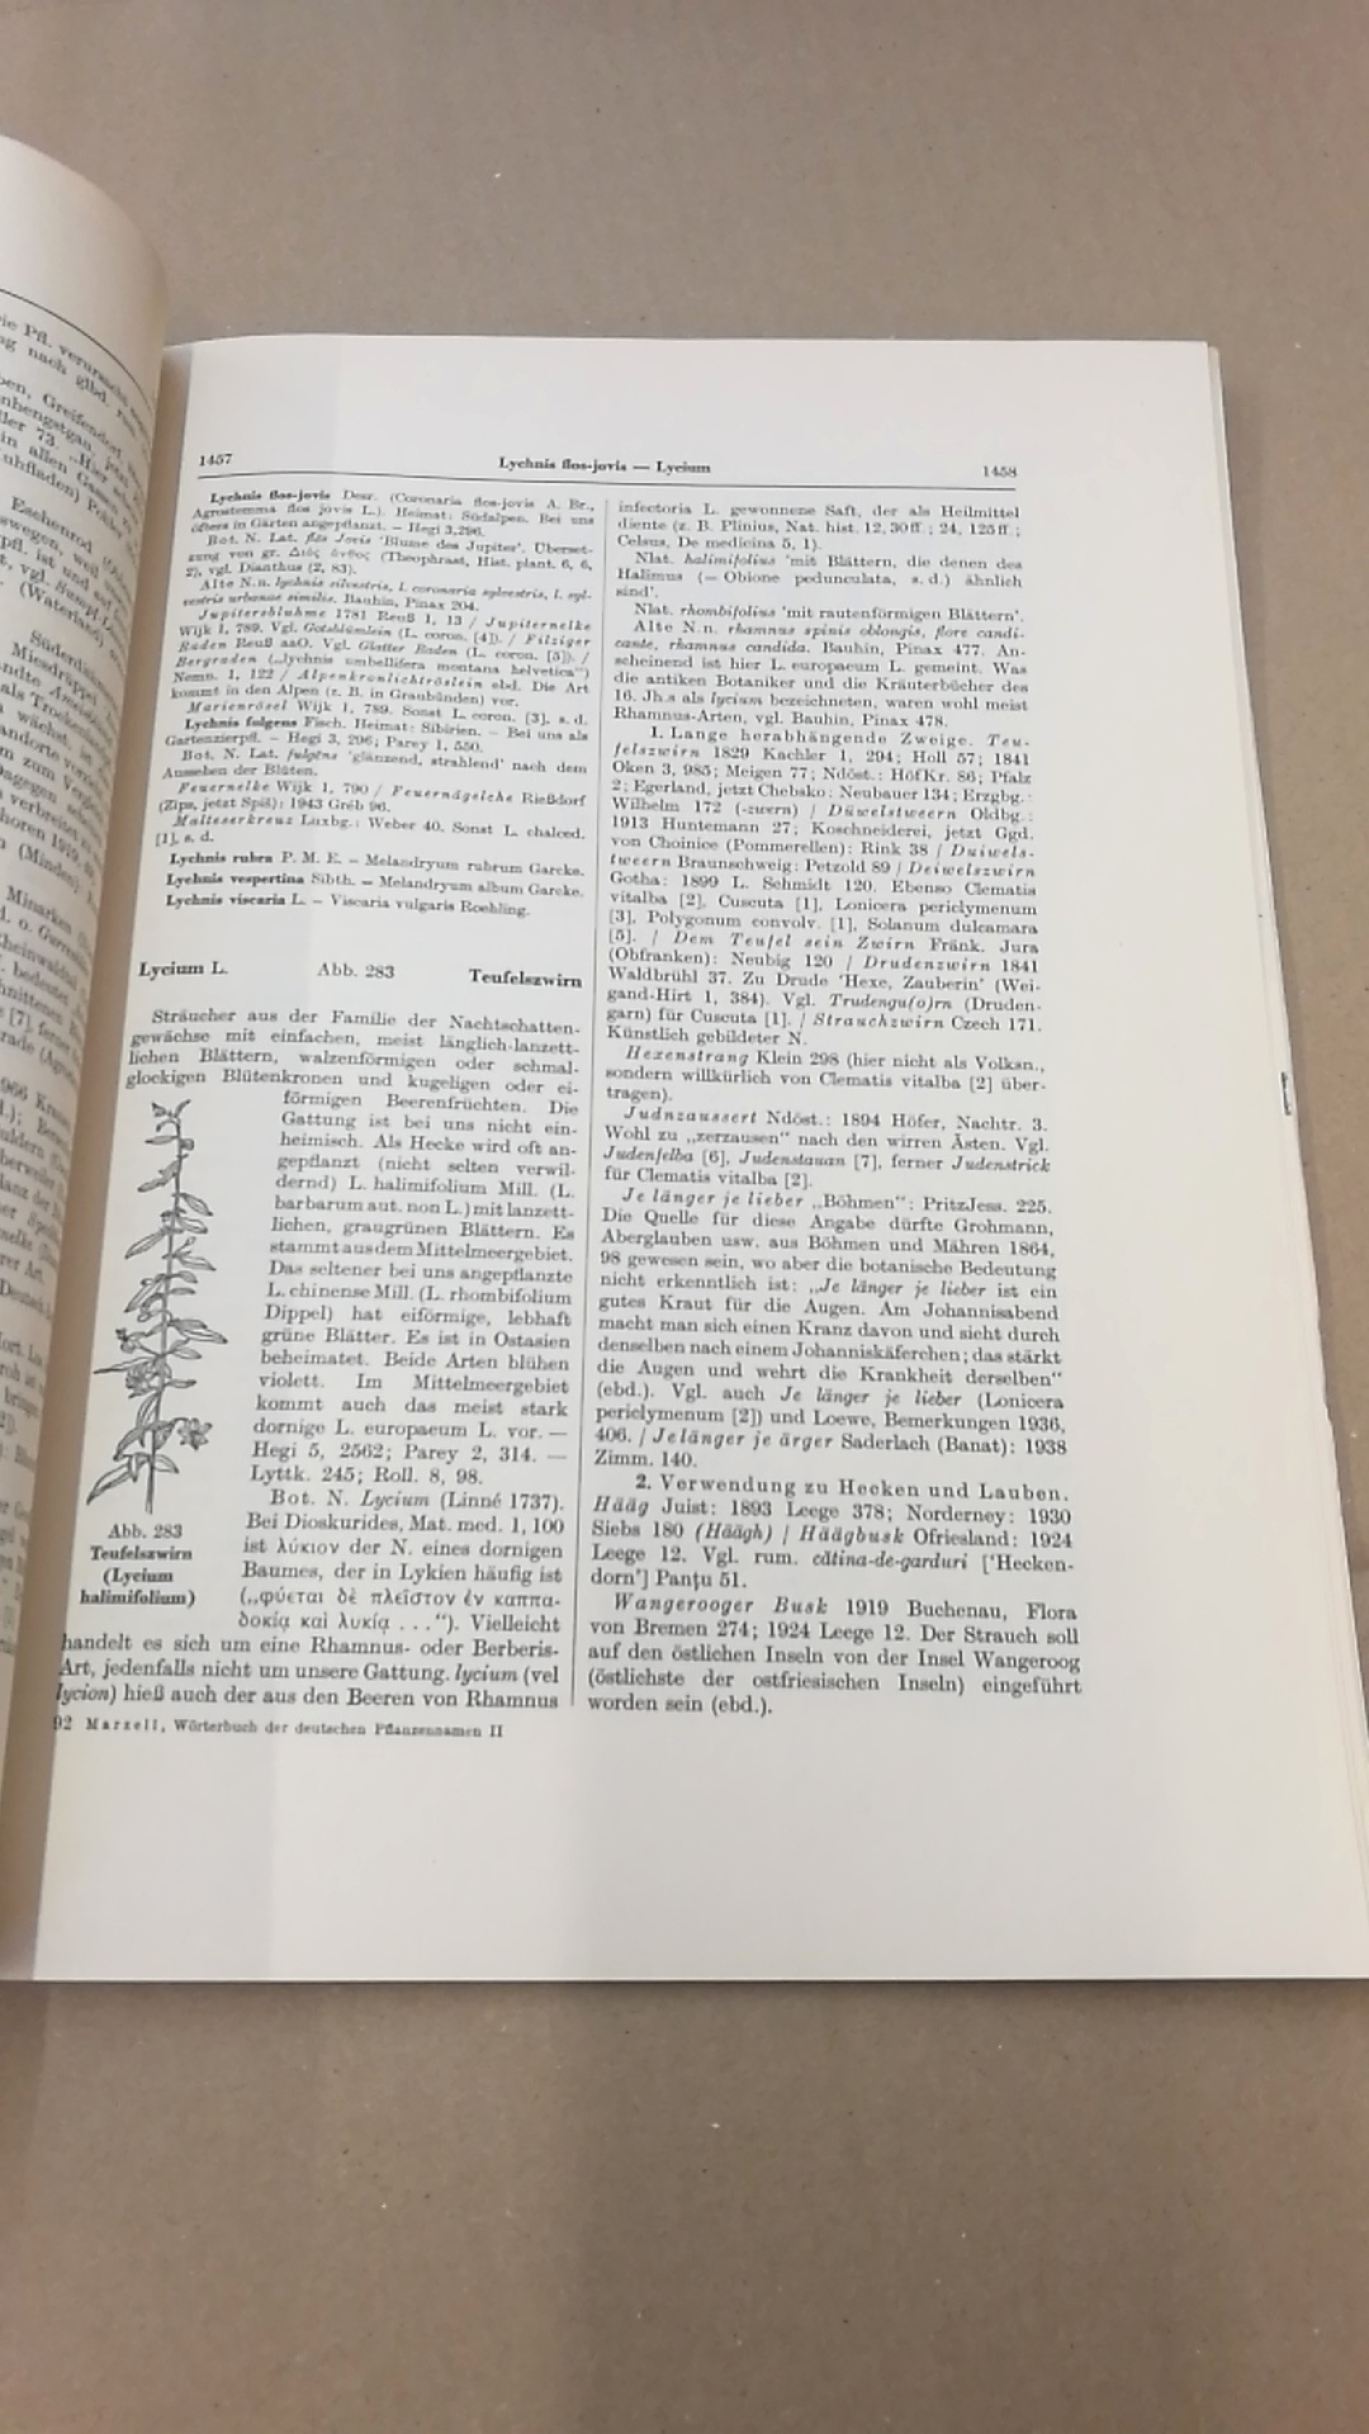 Marzell, Heinrich: Wörterbuch der Deutschen Pflanzennamen. Lieferung 19 (Band 2. Lieferung 10) Lychnis-Lythrum